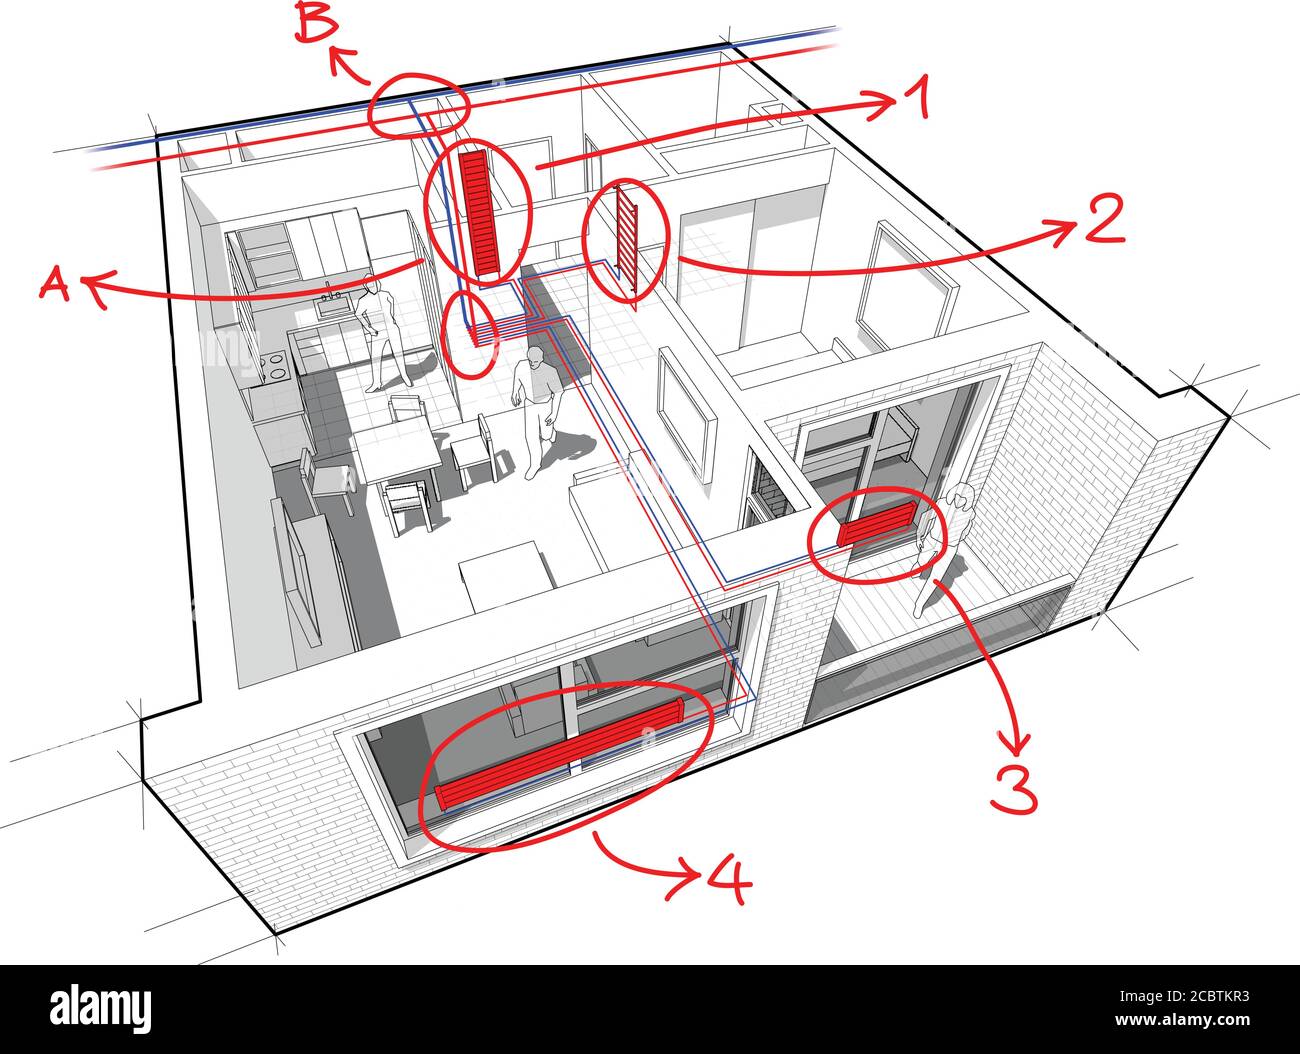 Diagramm einer Wohnung mit einem Schlafzimmer mit Heißwasserkühler Heizungs- und Zentralheizung Rohre als Quelle der Heizenergie Mit handgezeichneten Notizen Stock Vektor